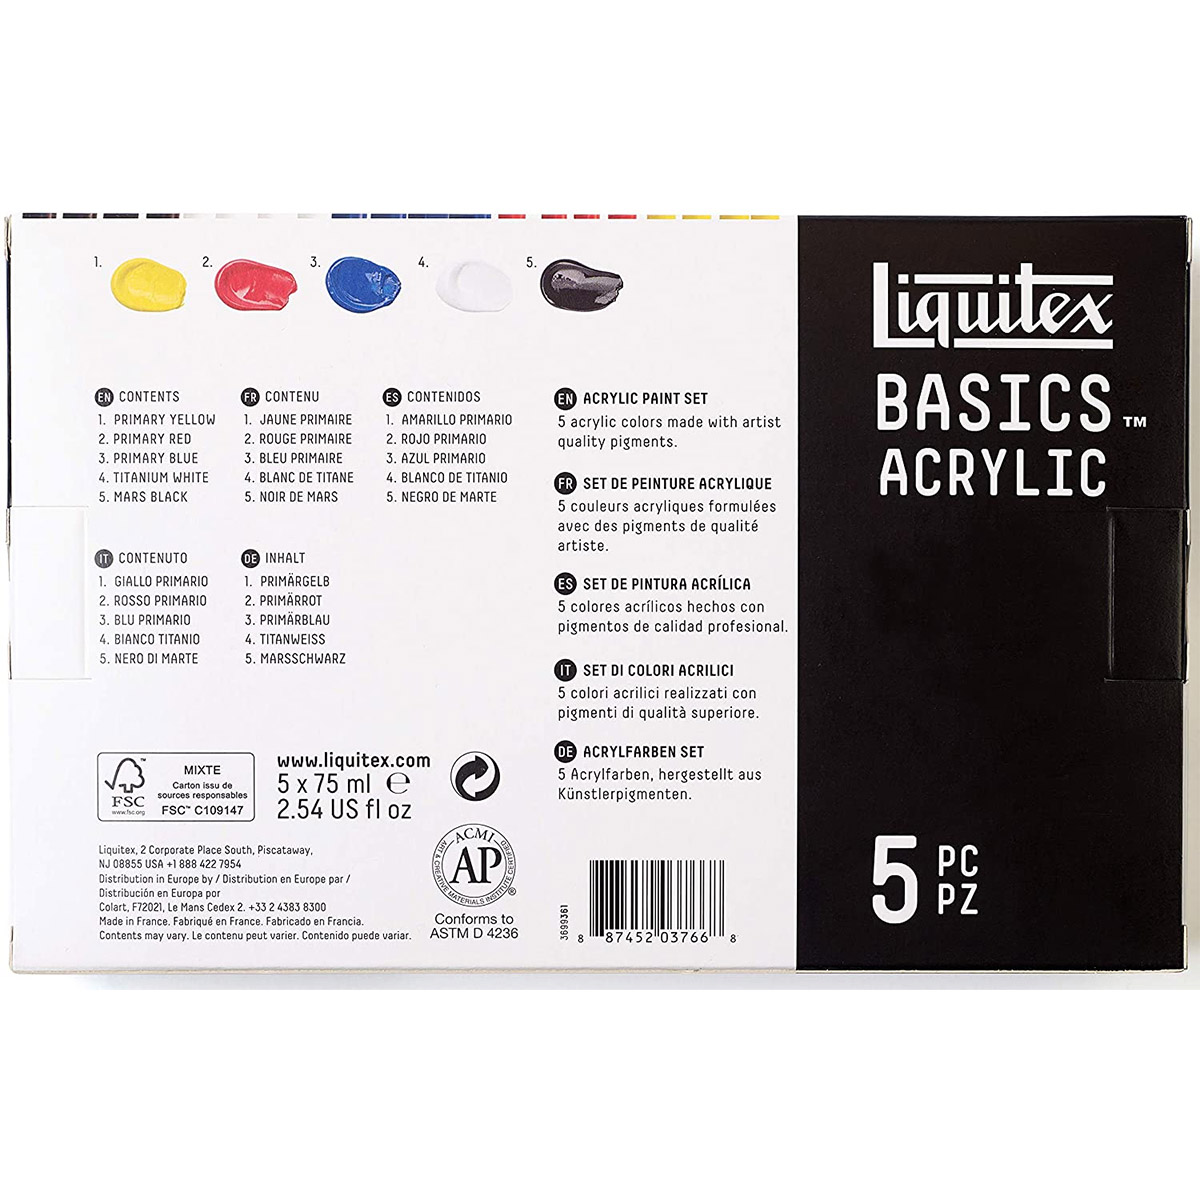 Liquitex Basics Acrylic 5 x 75ml Mediums Set